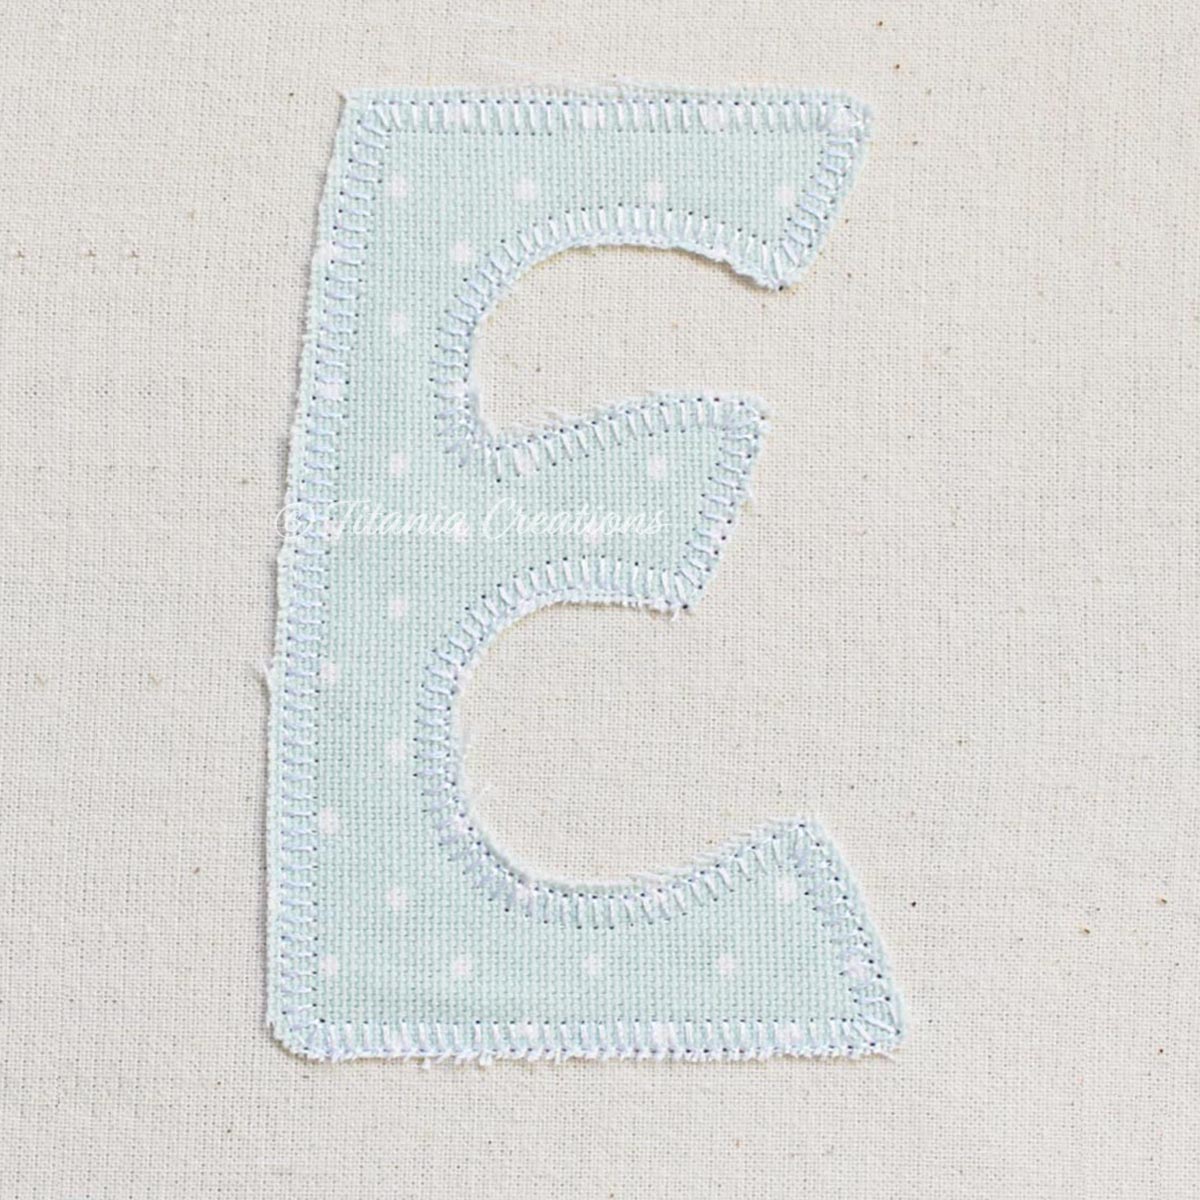 Applique Blanket Stitch Alphabet 4x4